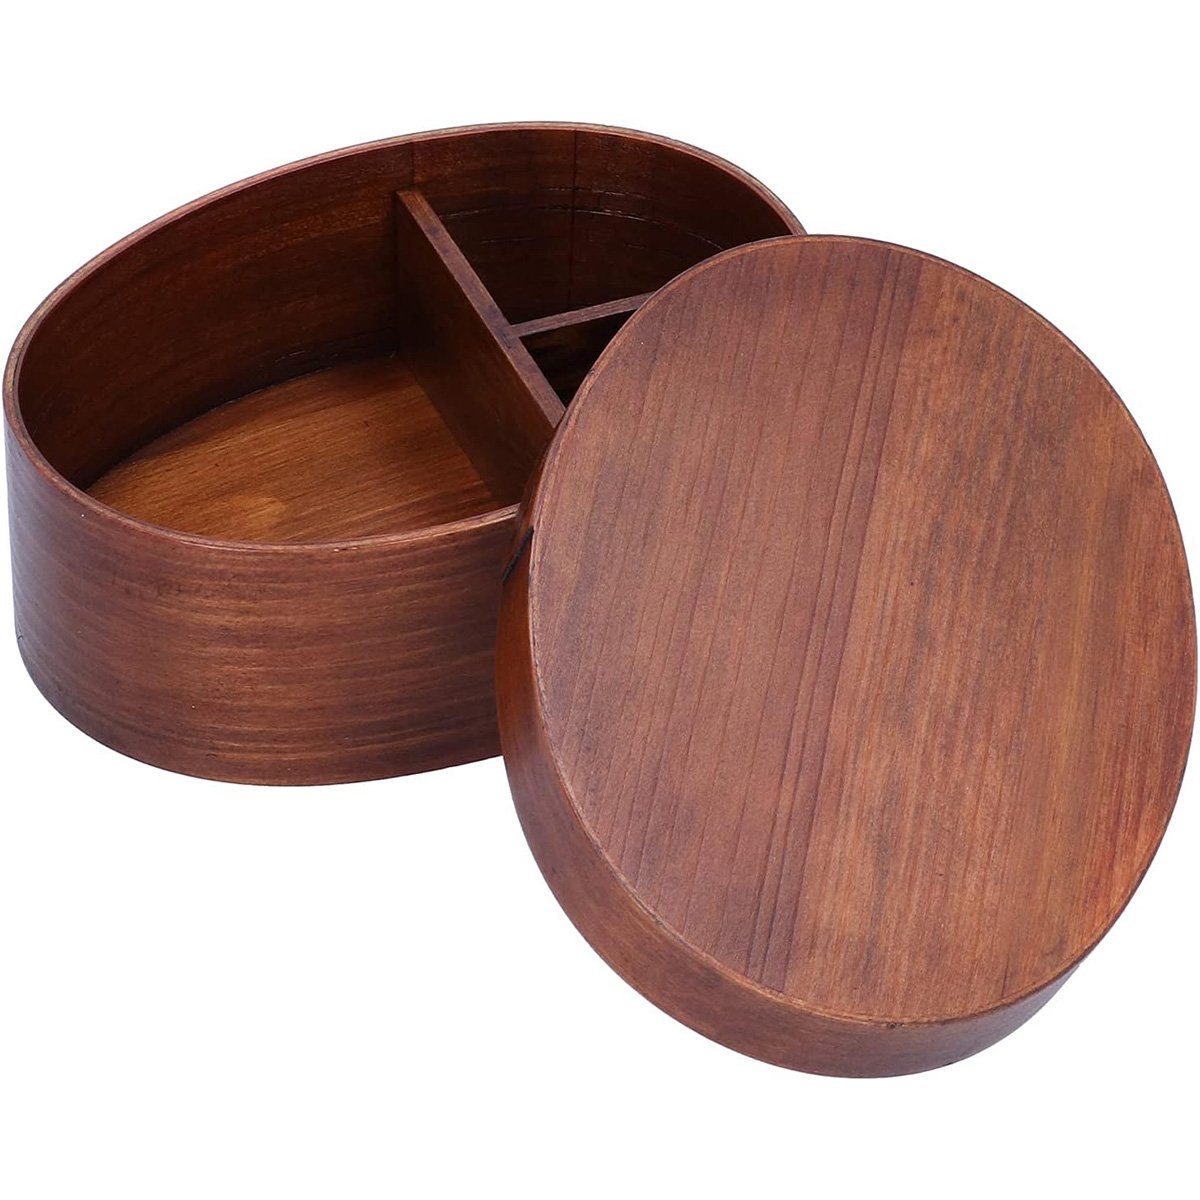 yozhiqu Lunchbox Ovale kreative Holz-Lunchbox im japanischen Stil, (1-tlg), Aufgeteilt, leicht zu reinigen, geeignet für Haus, Büro, Schule